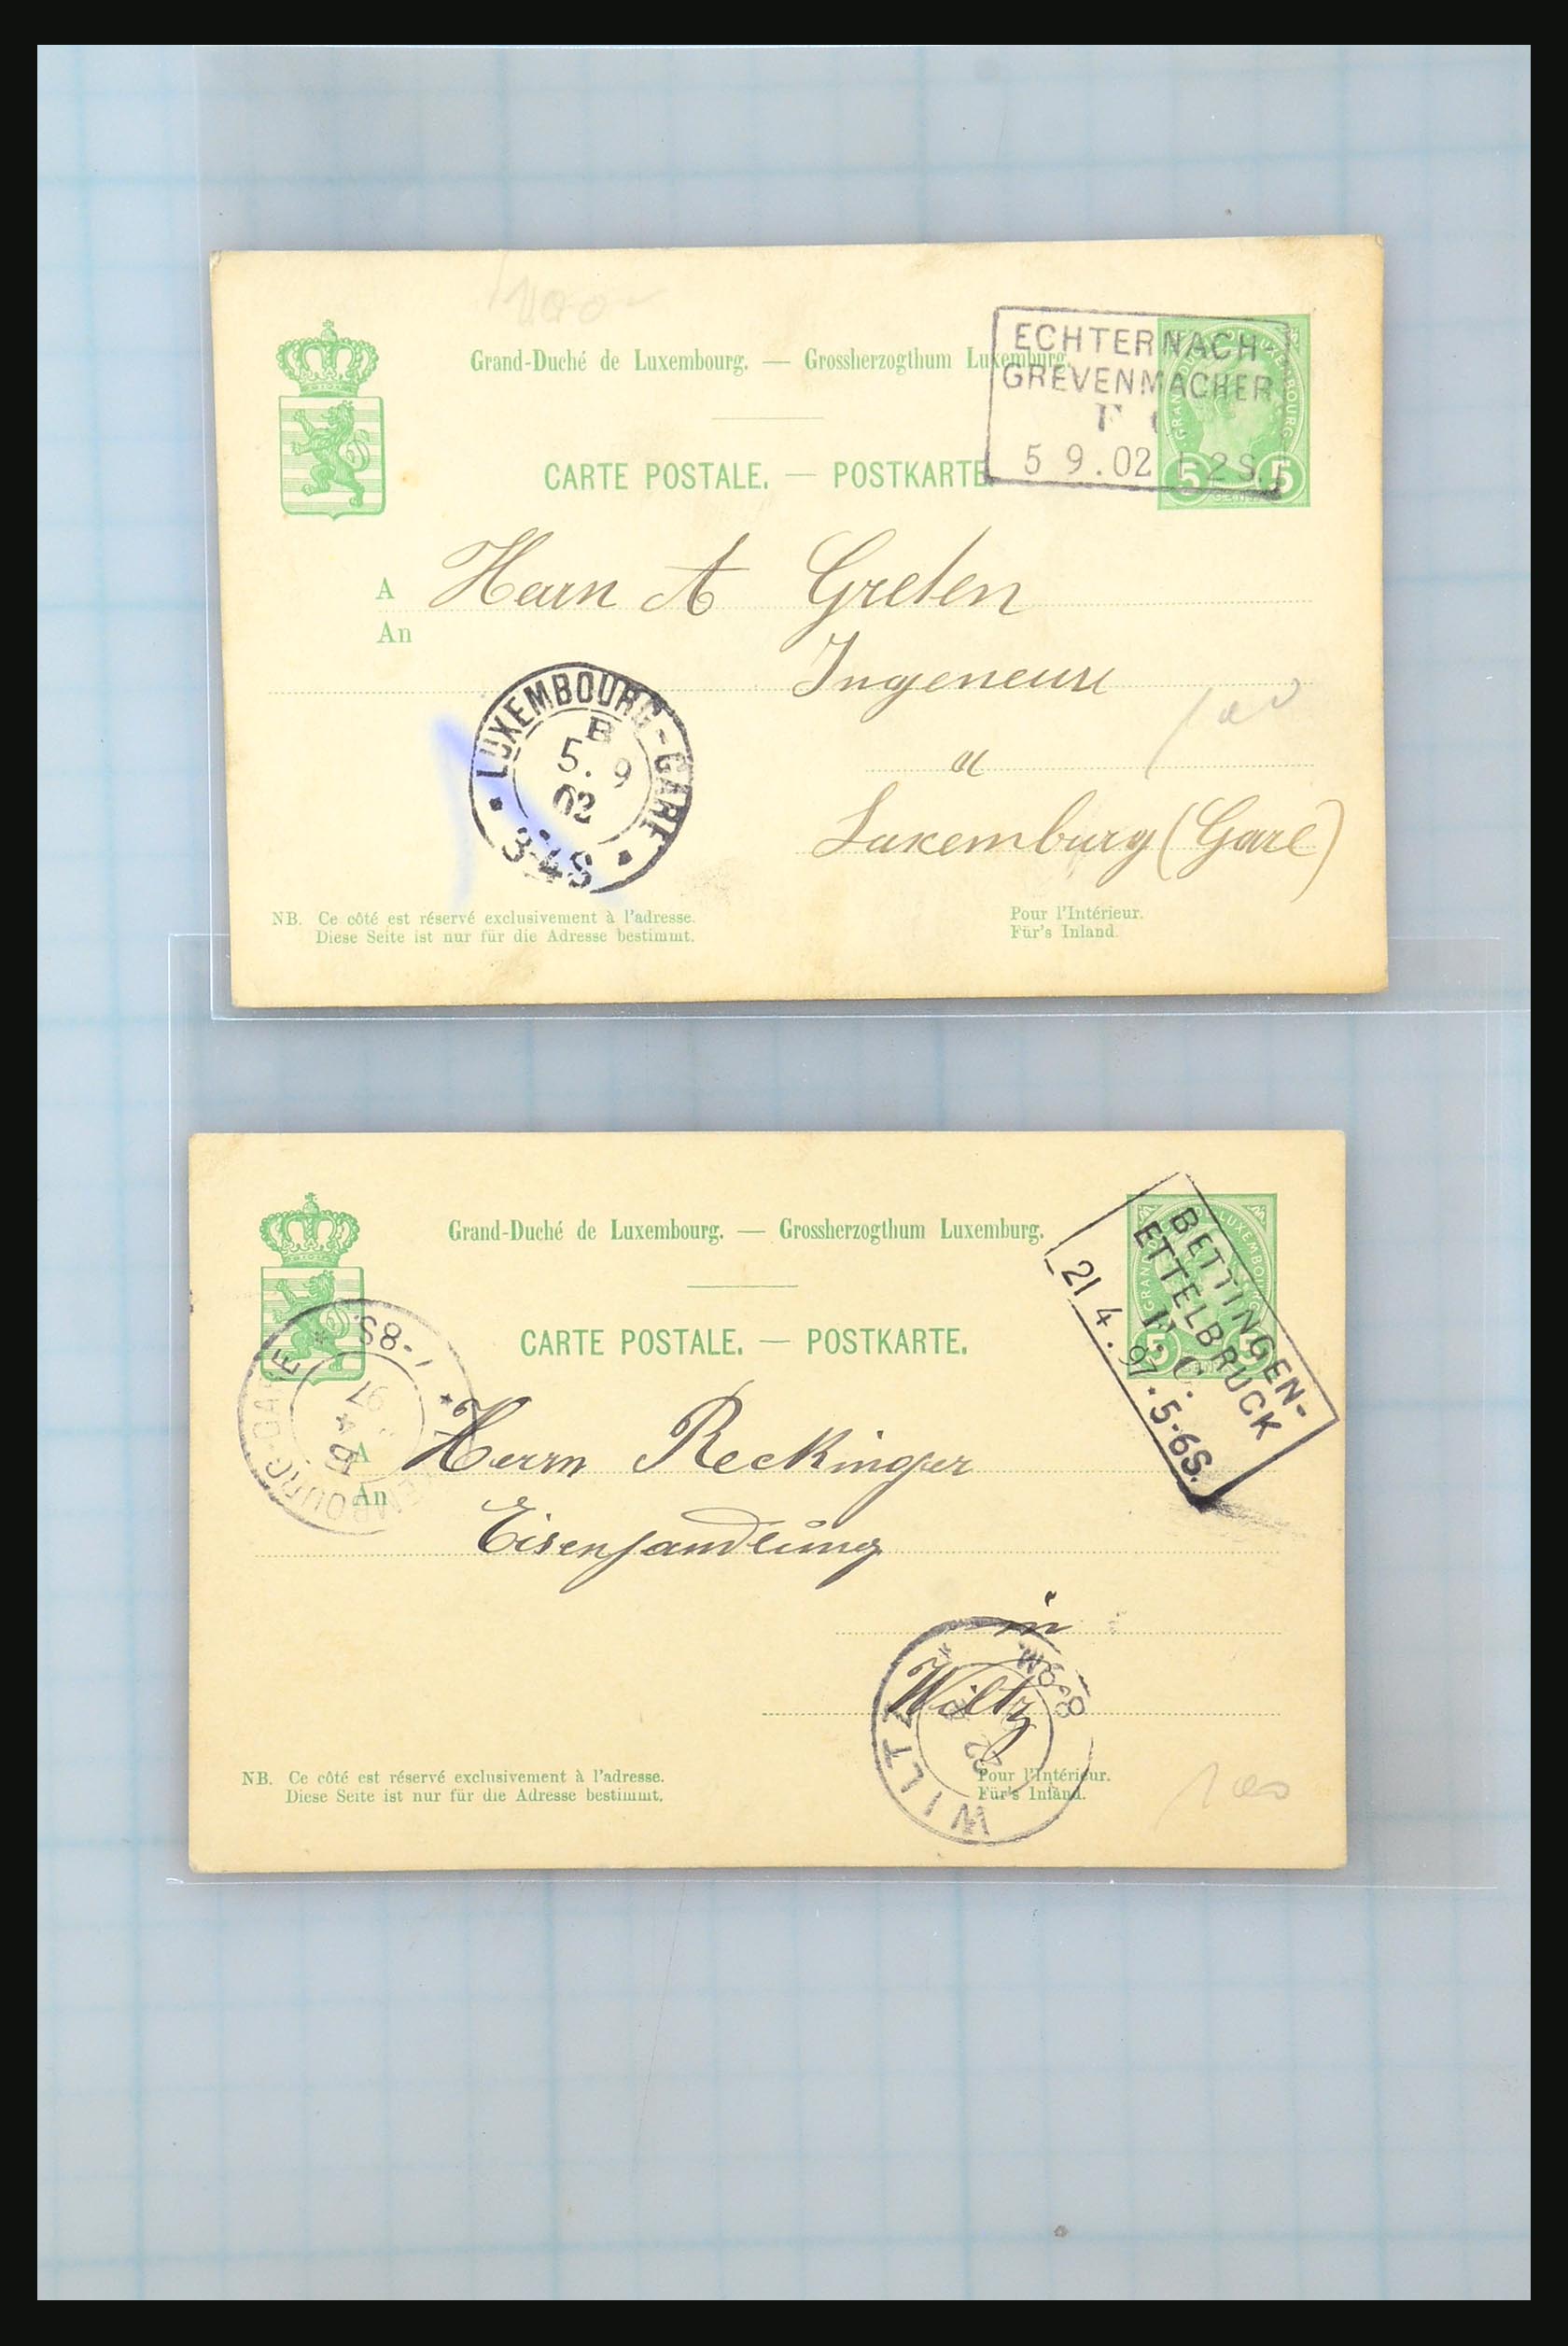 31358 056 - 31358 Portugal/Luxemburg/Griekenland brieven 1880-1960.